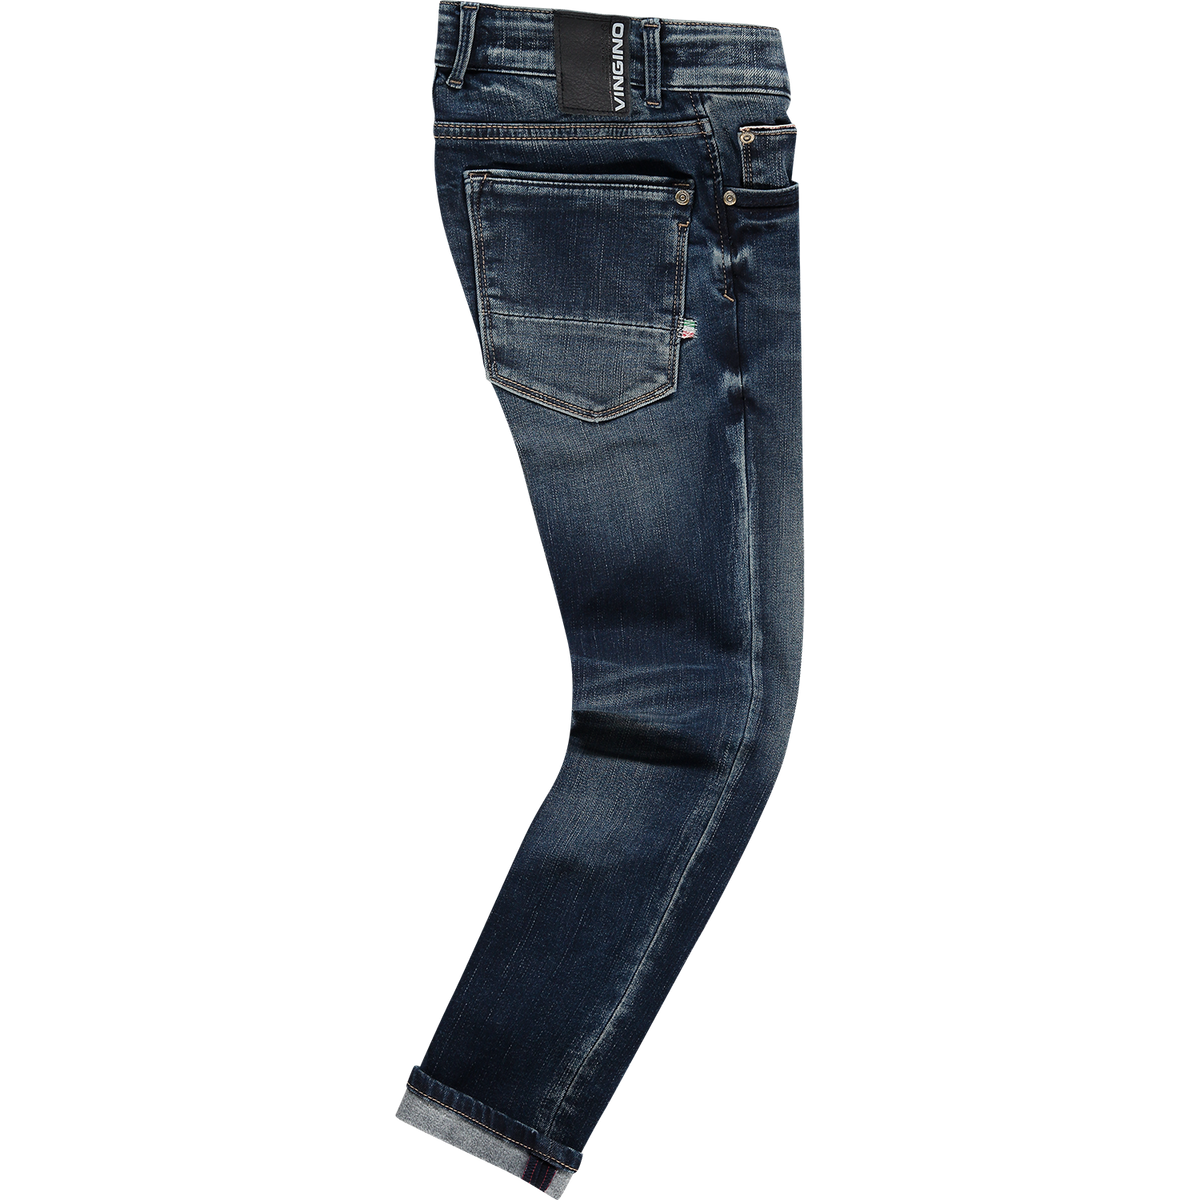 Jungen Jeans Amos Blue Vintage